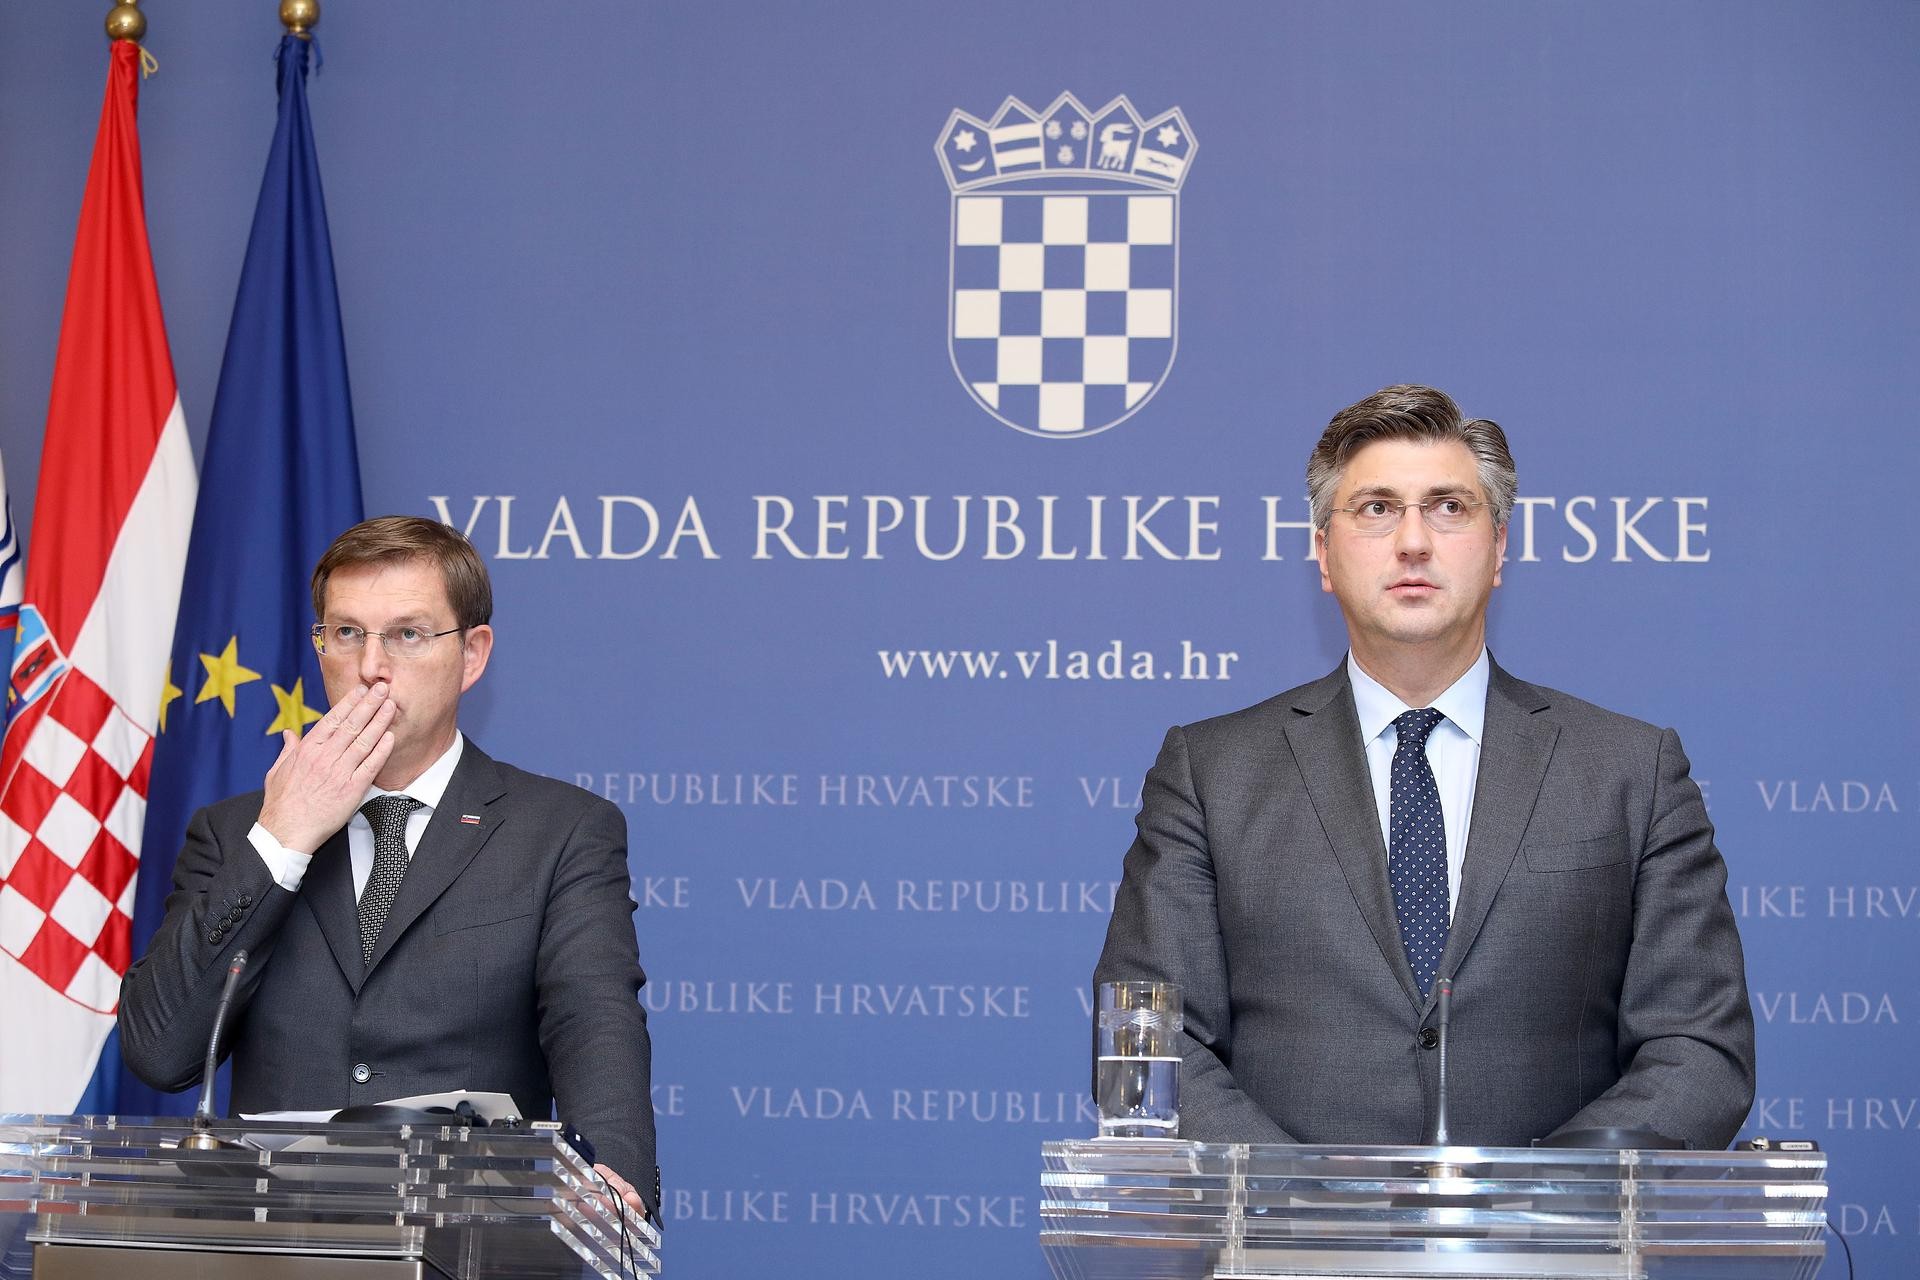 Arbitraža-Hrvaška delegacija po sestanku v Bruslju: Ne, ne bo nove meje med Hrvaško in Slovenijo! Neuradno: EK naj bi ostala nevtralna!